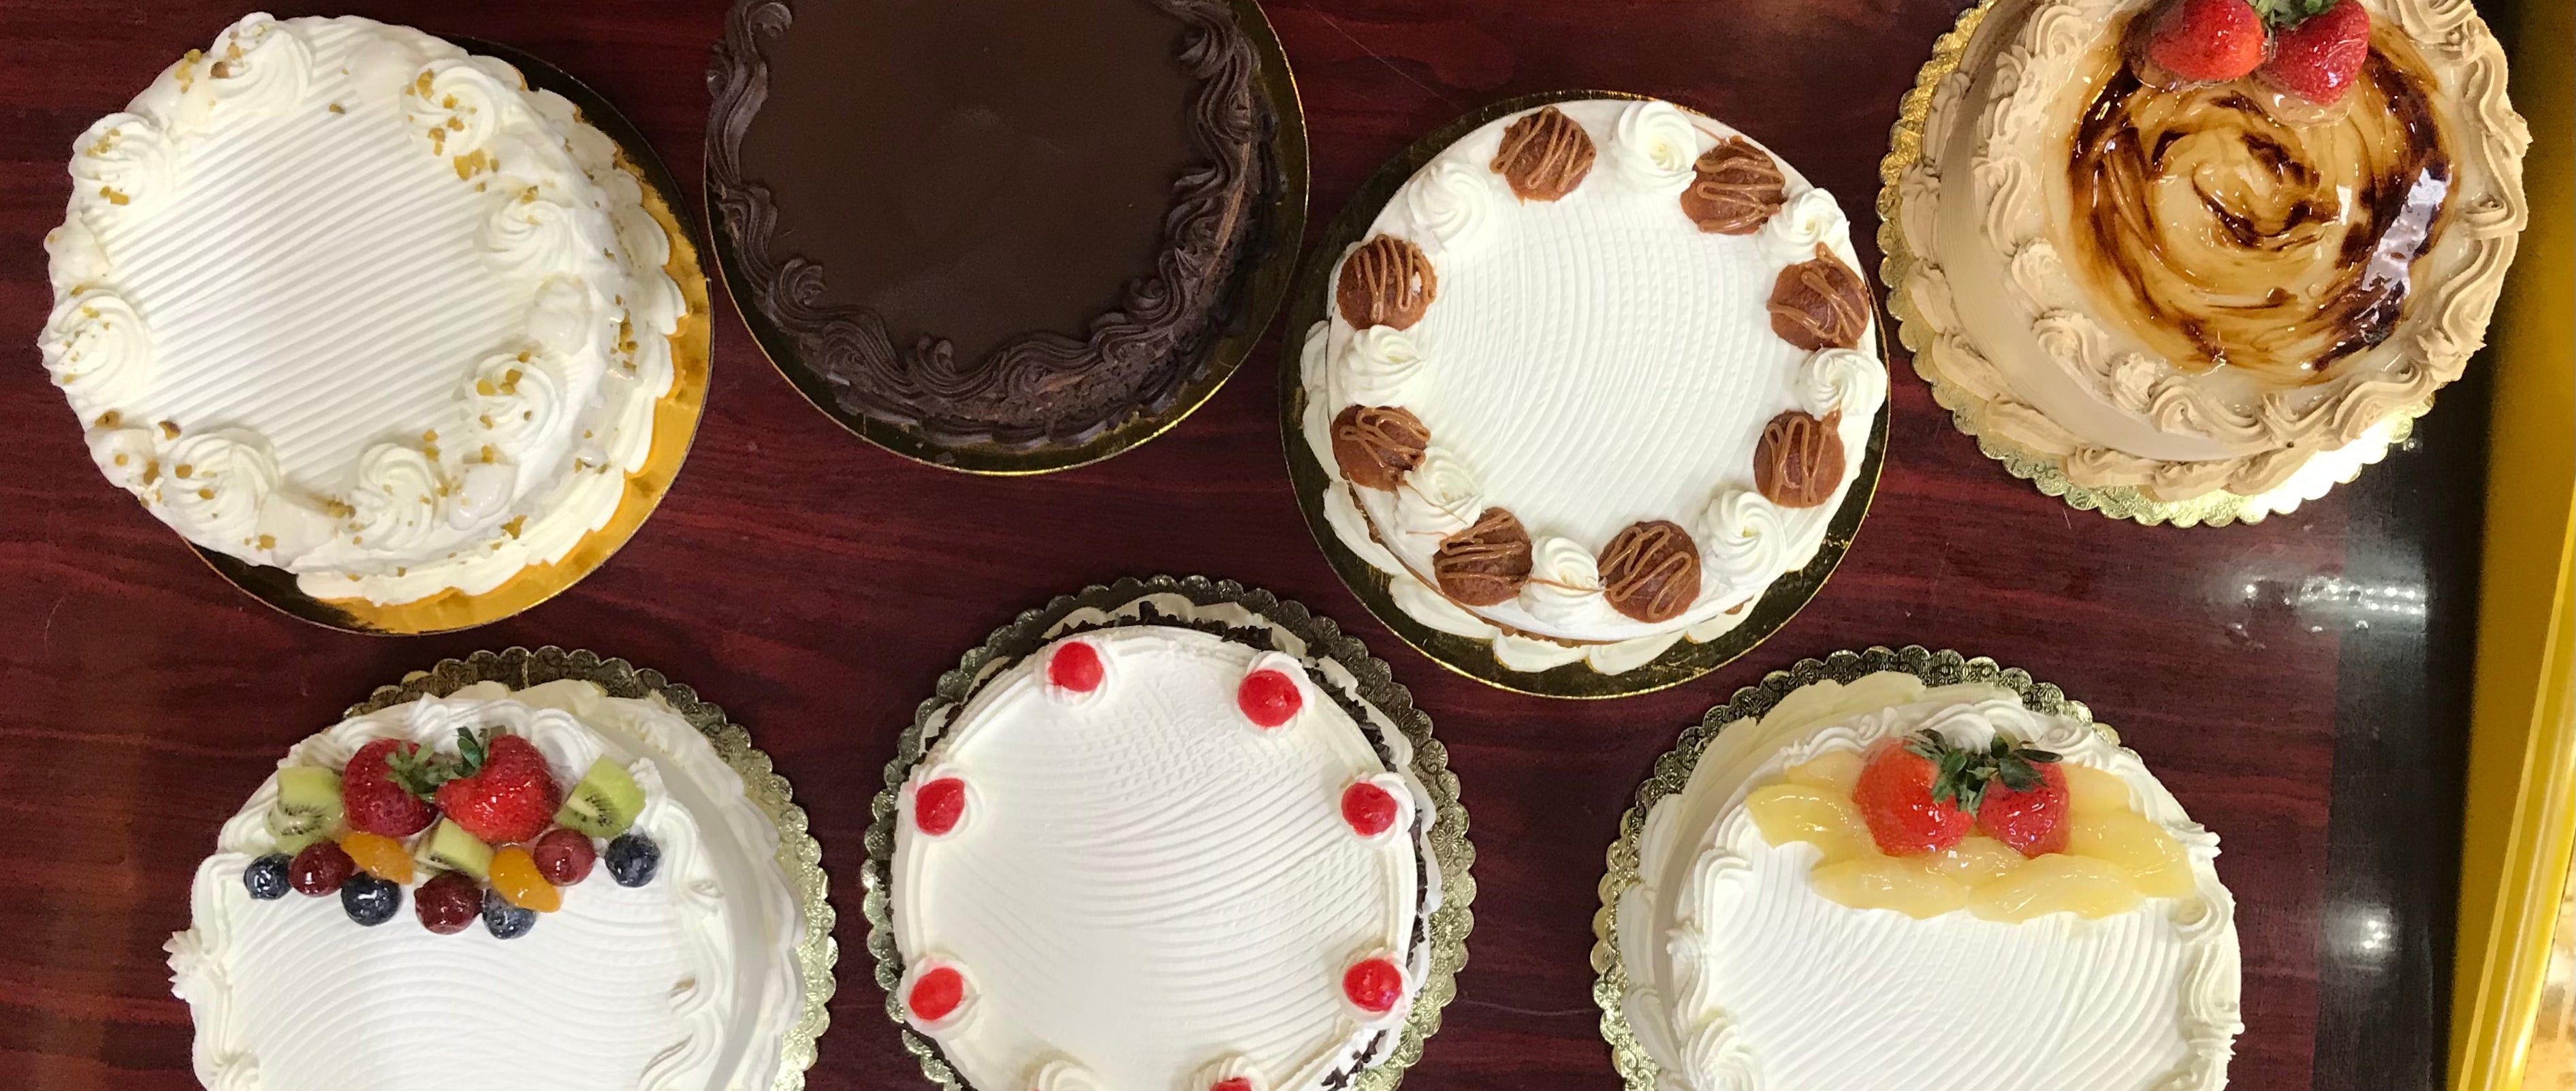 Cakes | Bakery | Meriden, CT